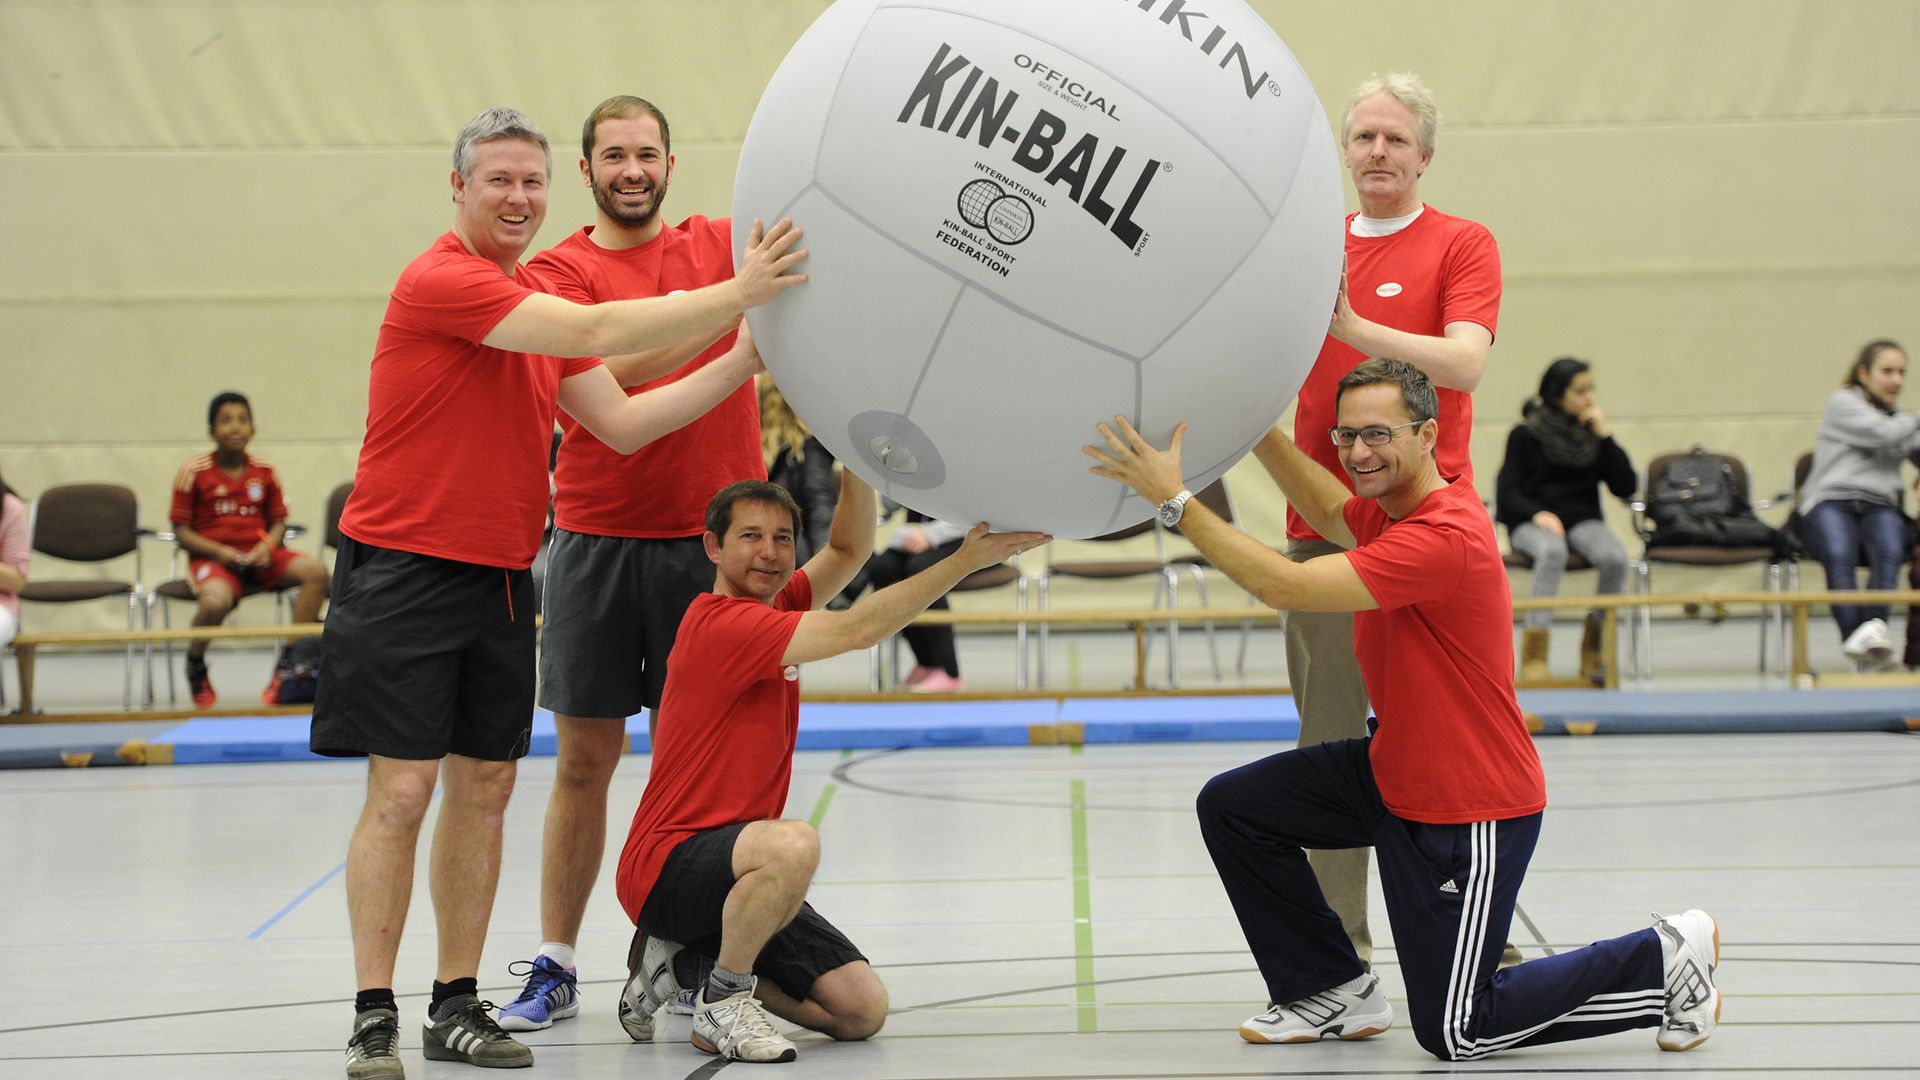 homas Geister, Corporate Vice President Global Market Research & Global Media (vorne rechts) und sein Team haben beim Kin-Ball-Turnier alles gegeben.